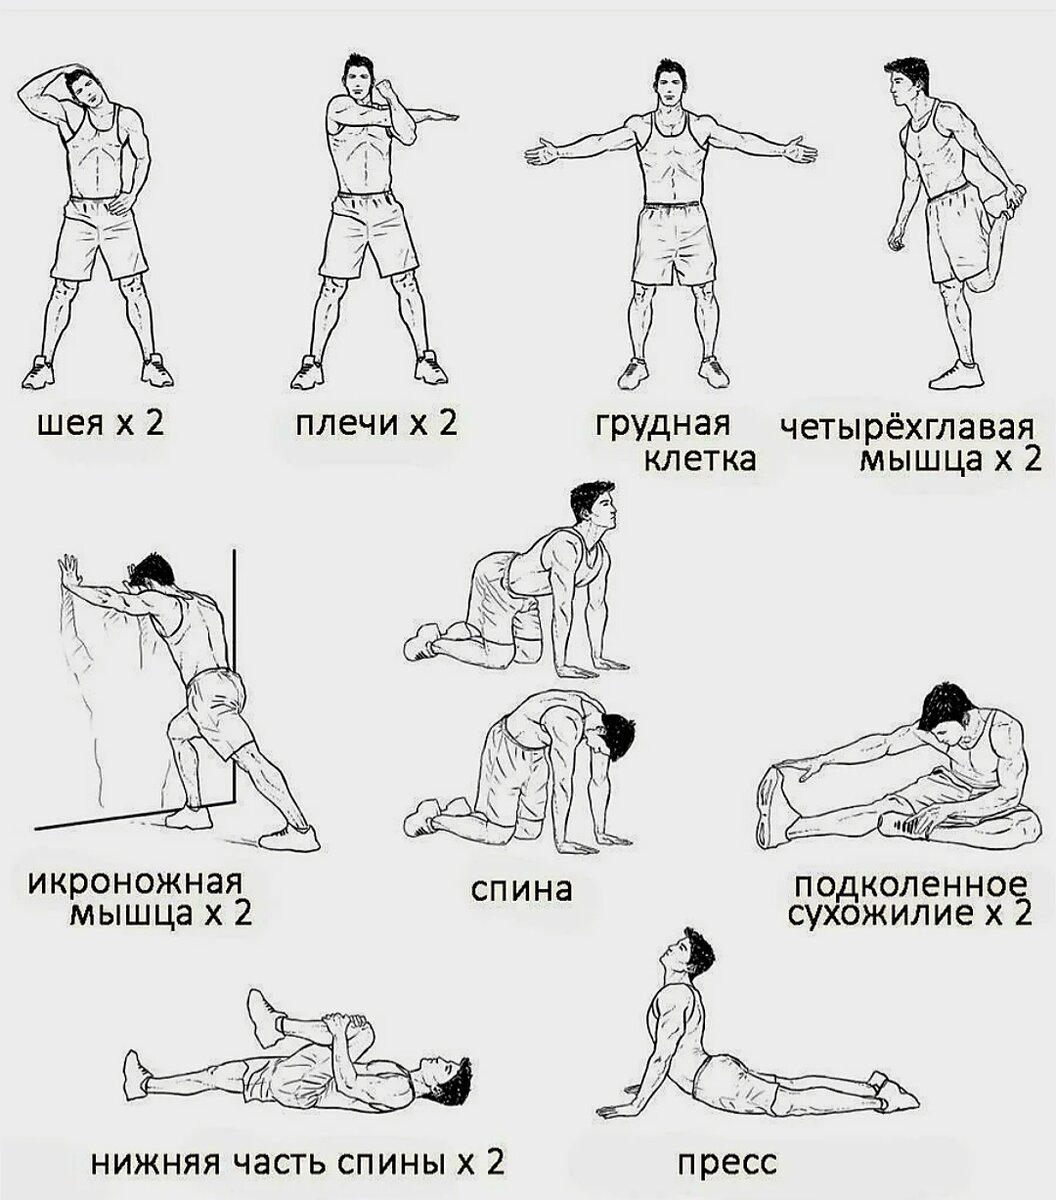 Комплекс любых упражнений. Комплекс упражнений на растяжку мышц перед силовой тренировкой. Растяжка заминка после силовой тренировки. Комплекс растяжки после силовой тренировки. Упражнения для заминки после растяжки.